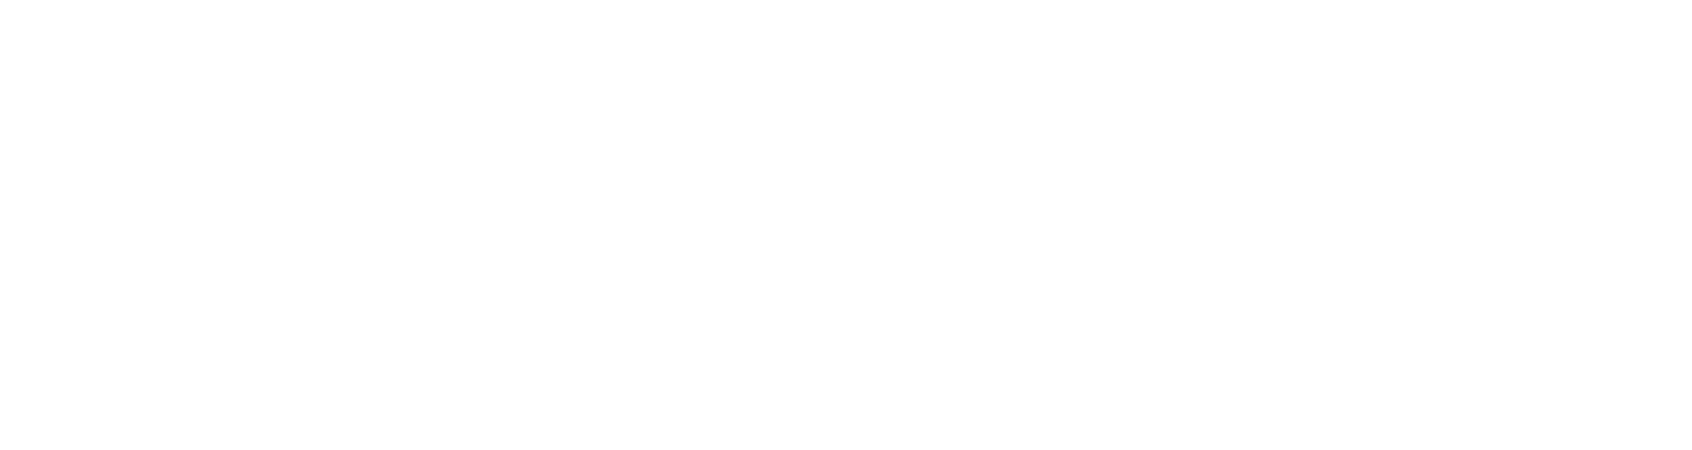 Atatürk Kültür Merkezi Başkanlığı